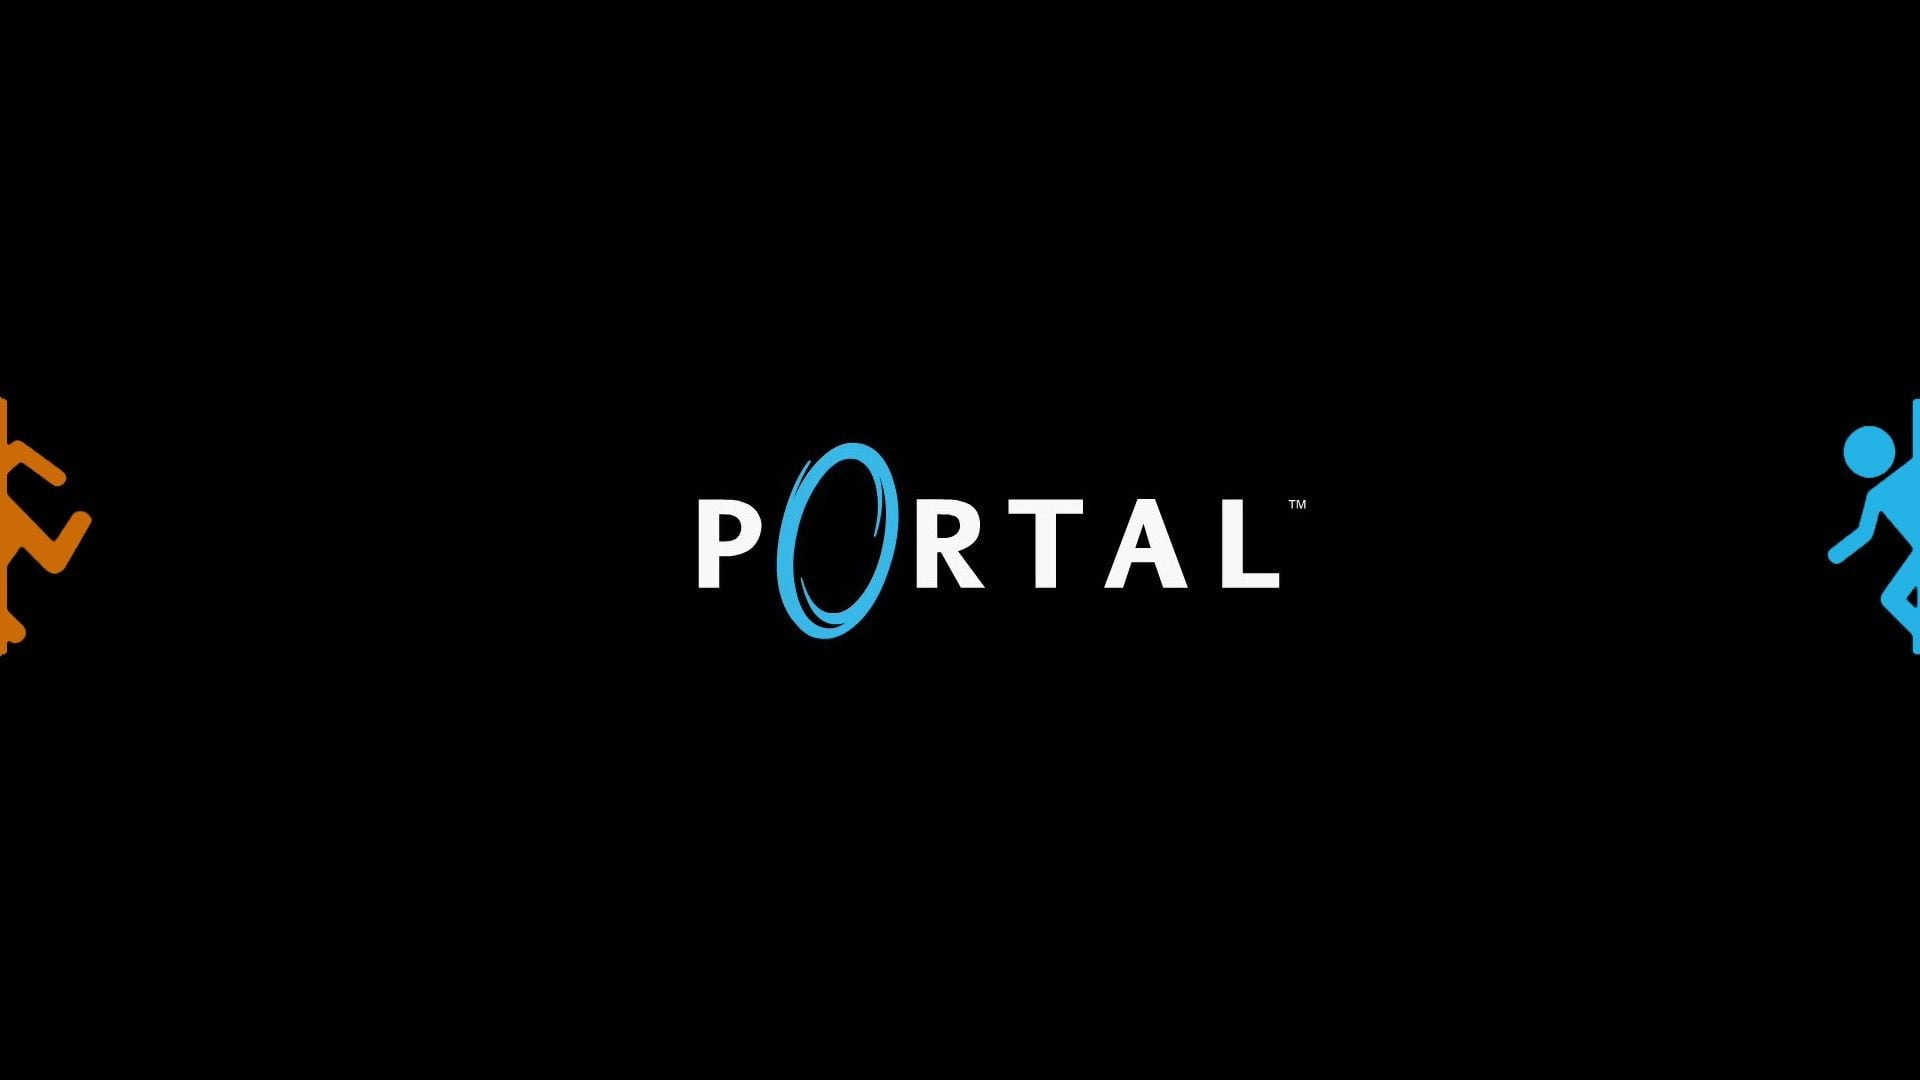 Portal 2 bhop commands фото 110